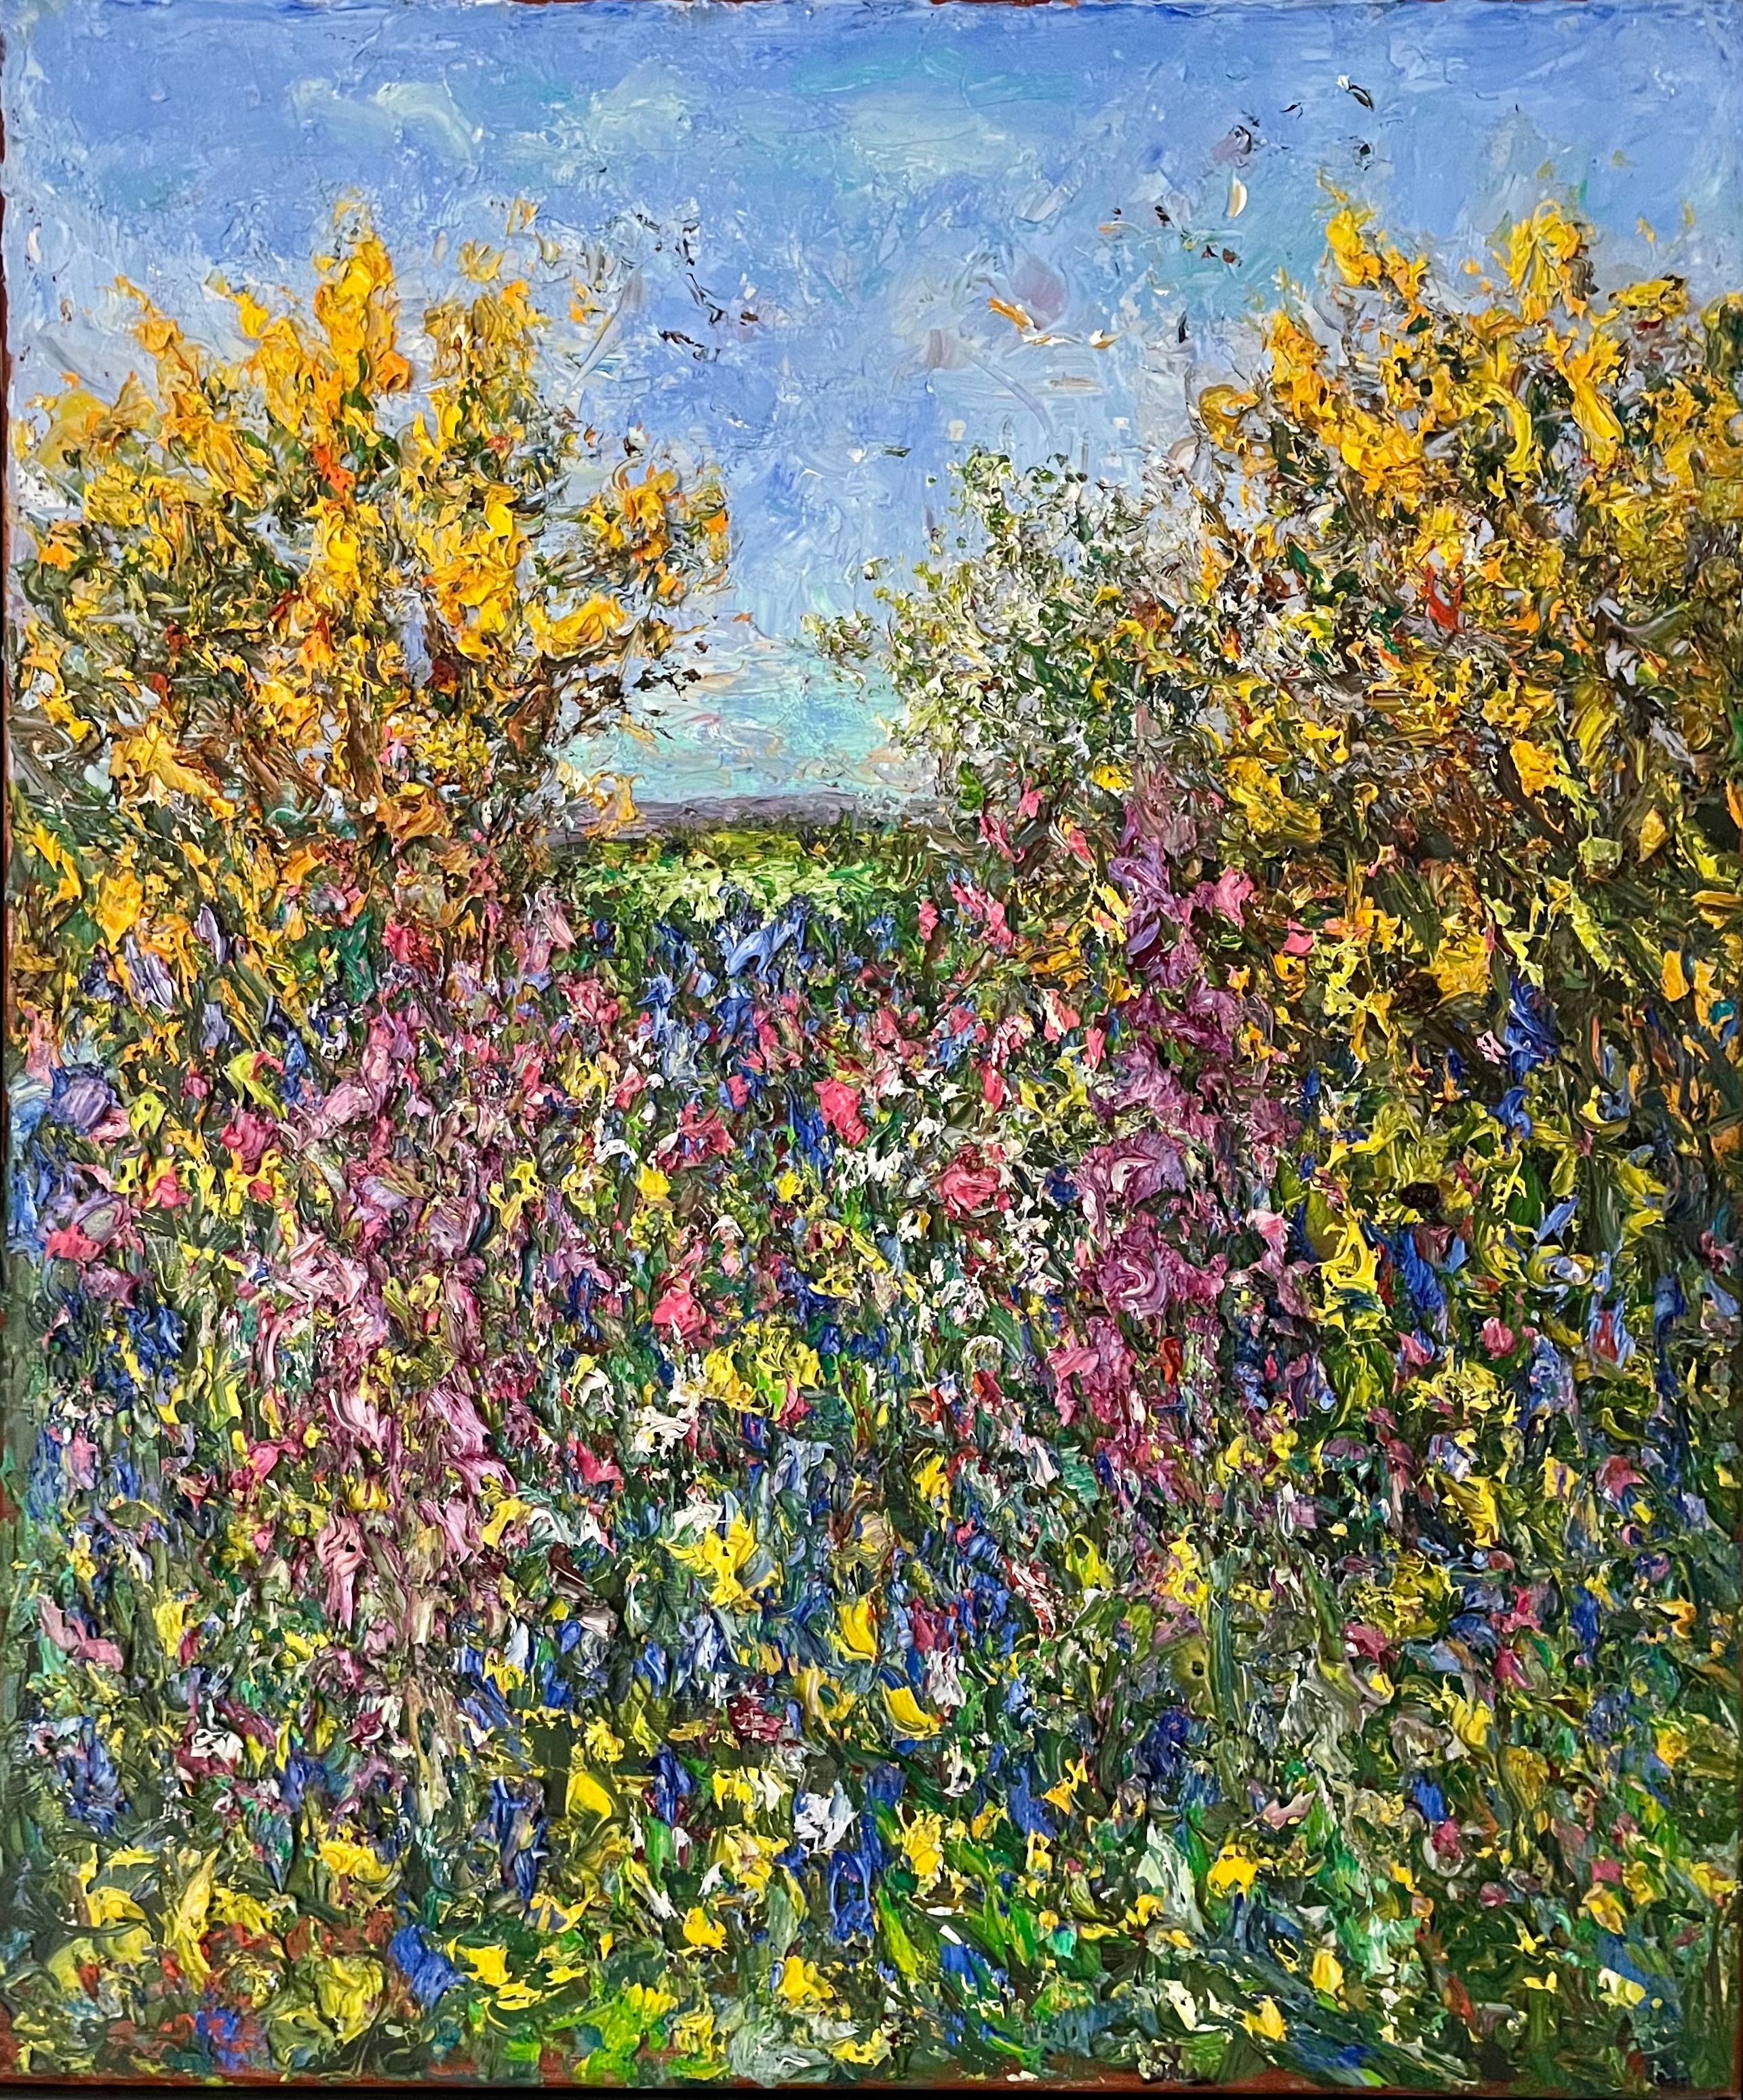 Haie de Cornish, fin du printemps.  Peinture à l'huile - paysage contemporain - Impressionnisme Painting par Michael Strang